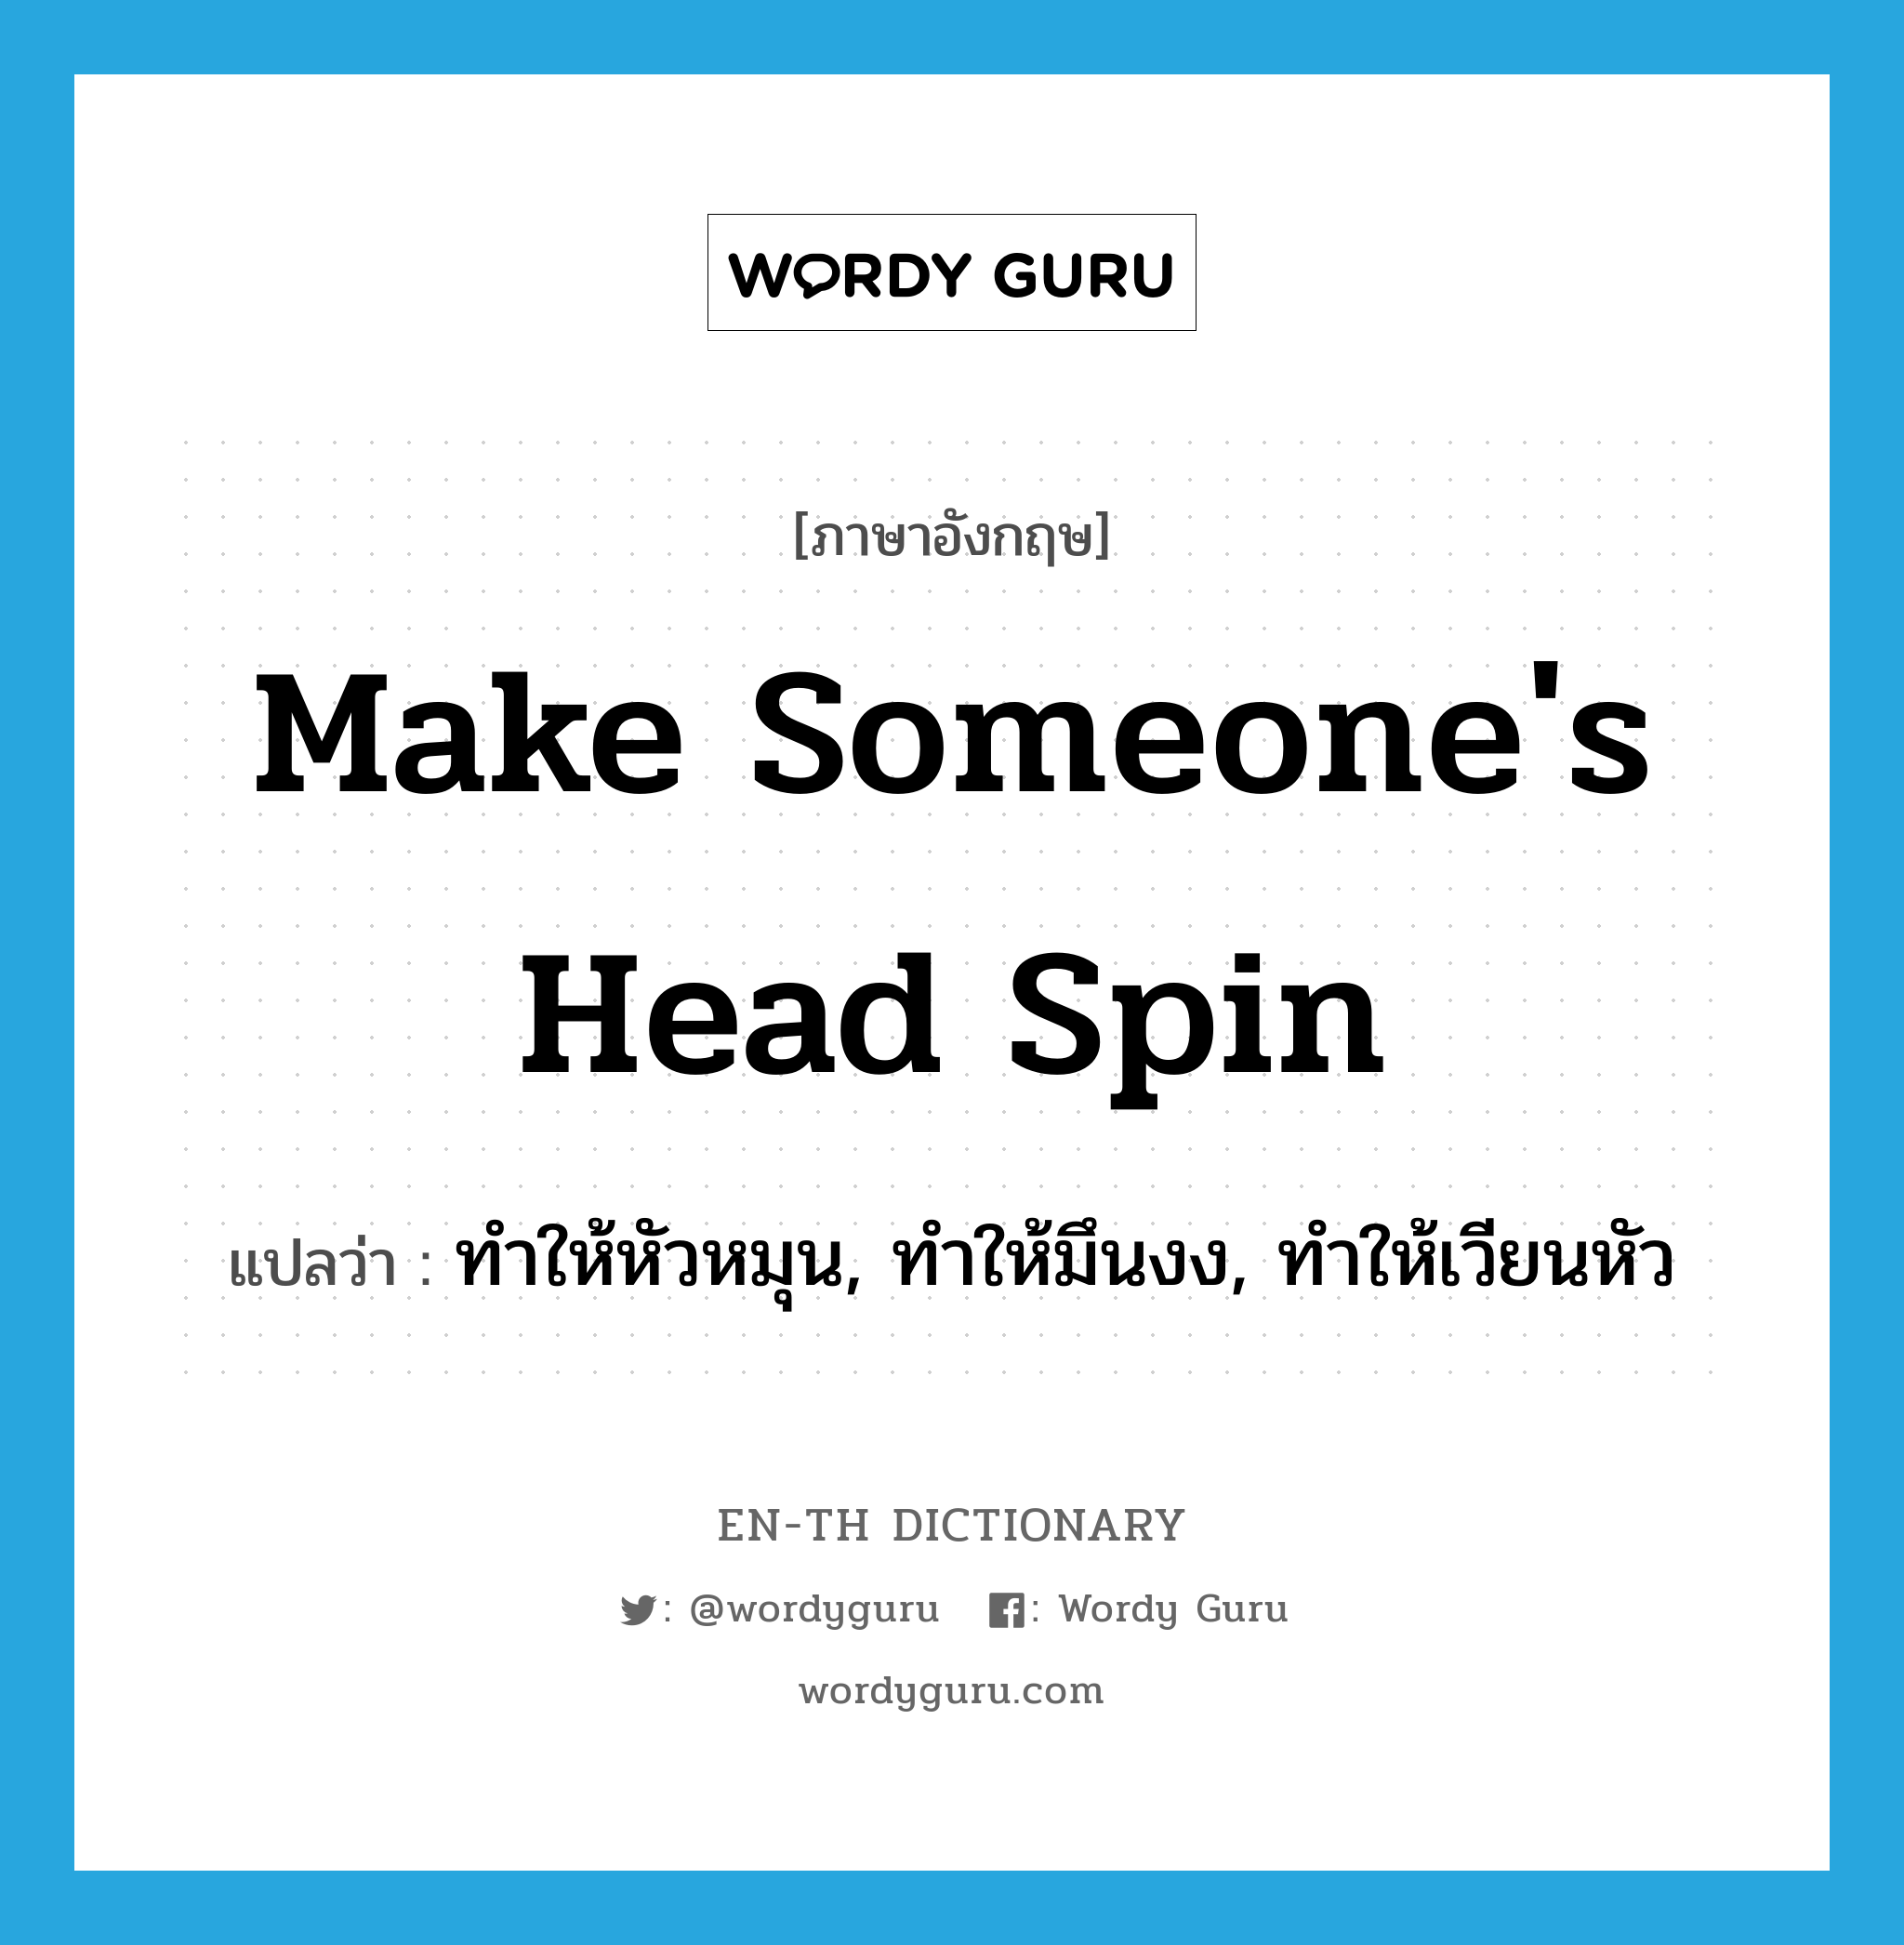 ทำให้หัวหมุน, ทำให้มึนงง, ทำให้เวียนหัว ภาษาอังกฤษ?, คำศัพท์ภาษาอังกฤษ ทำให้หัวหมุน, ทำให้มึนงง, ทำให้เวียนหัว แปลว่า make someone's head spin ประเภท IDM หมวด IDM